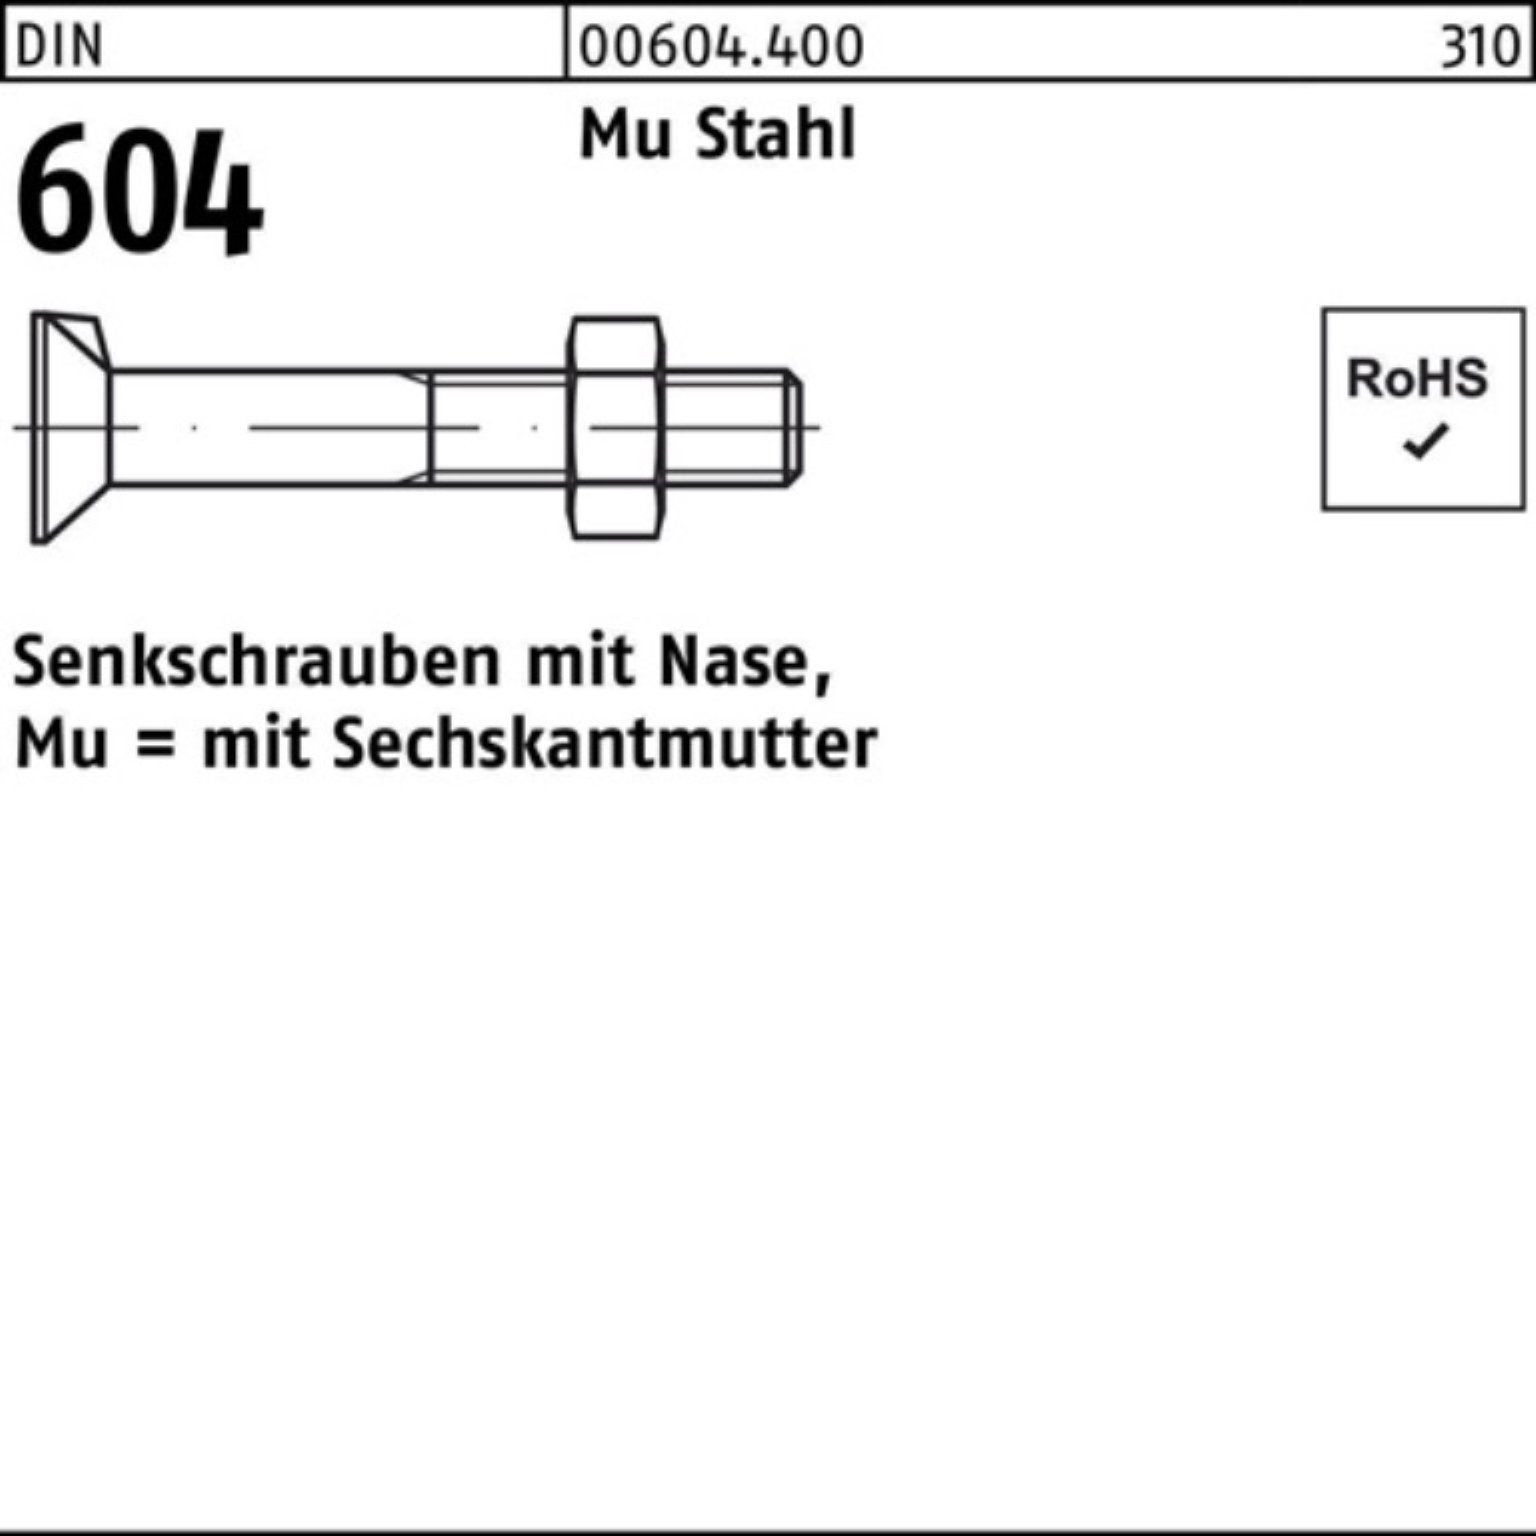 Reyher Senkschraube 100er Pack Senkschraube DIN 604 Nase/6-ktmutter M20x 80 Mu Stahl 4.6 2